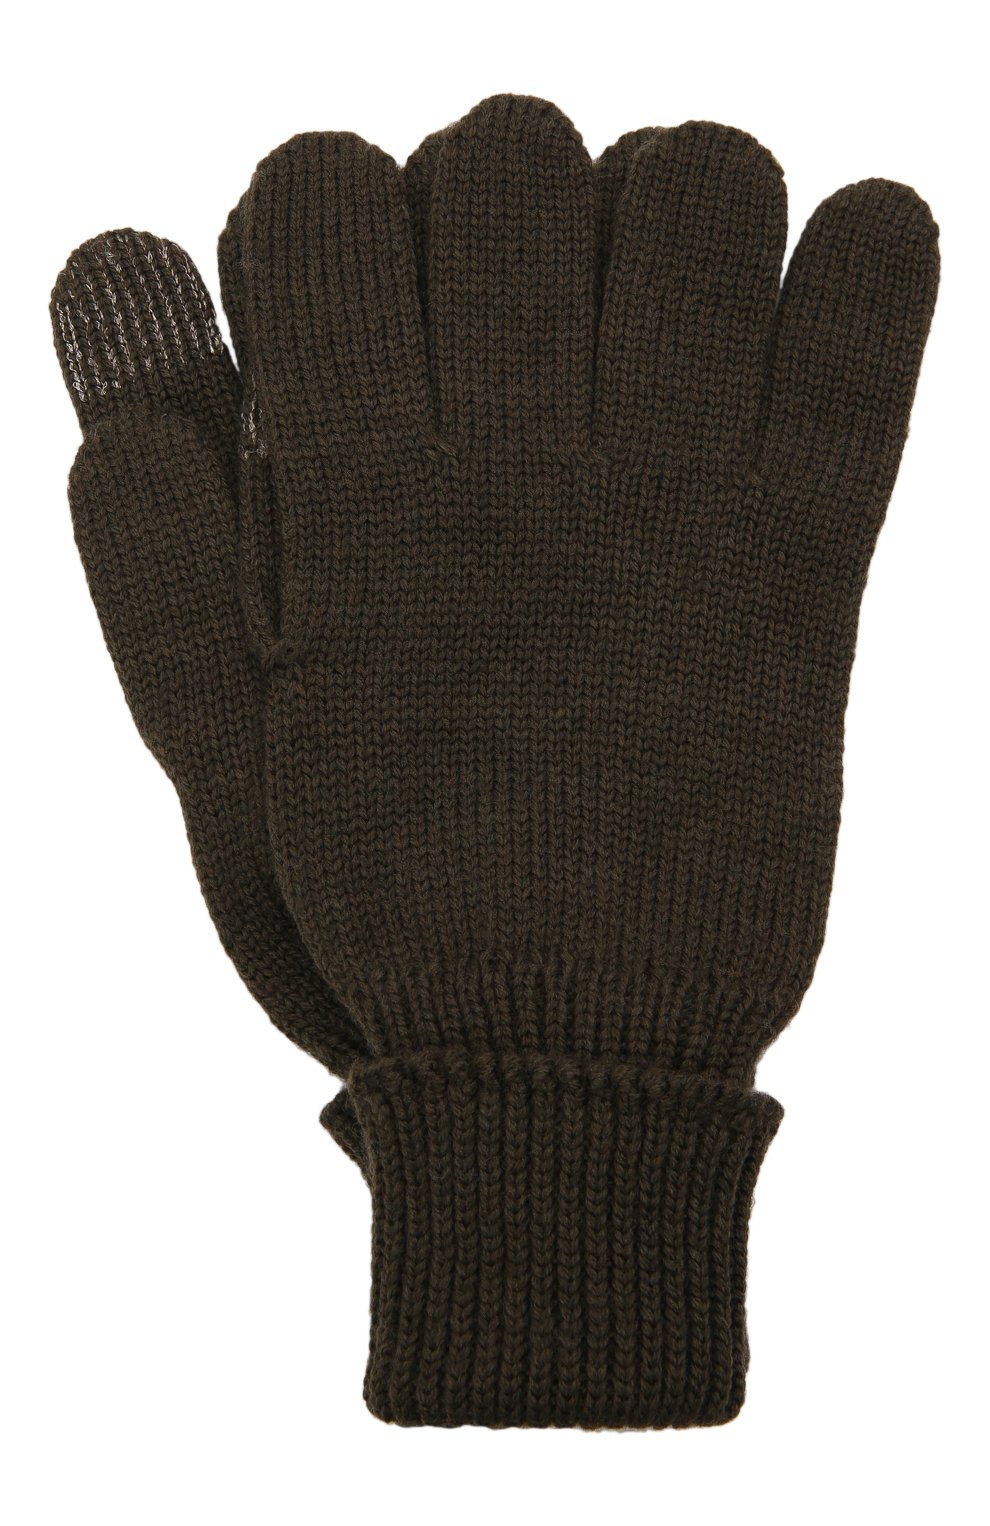 Детские шерстяные перчатки IL TRENINO хаки цвета, арт. 21 4056 | Фото 1 (Материал: Текстиль, Шерсть)